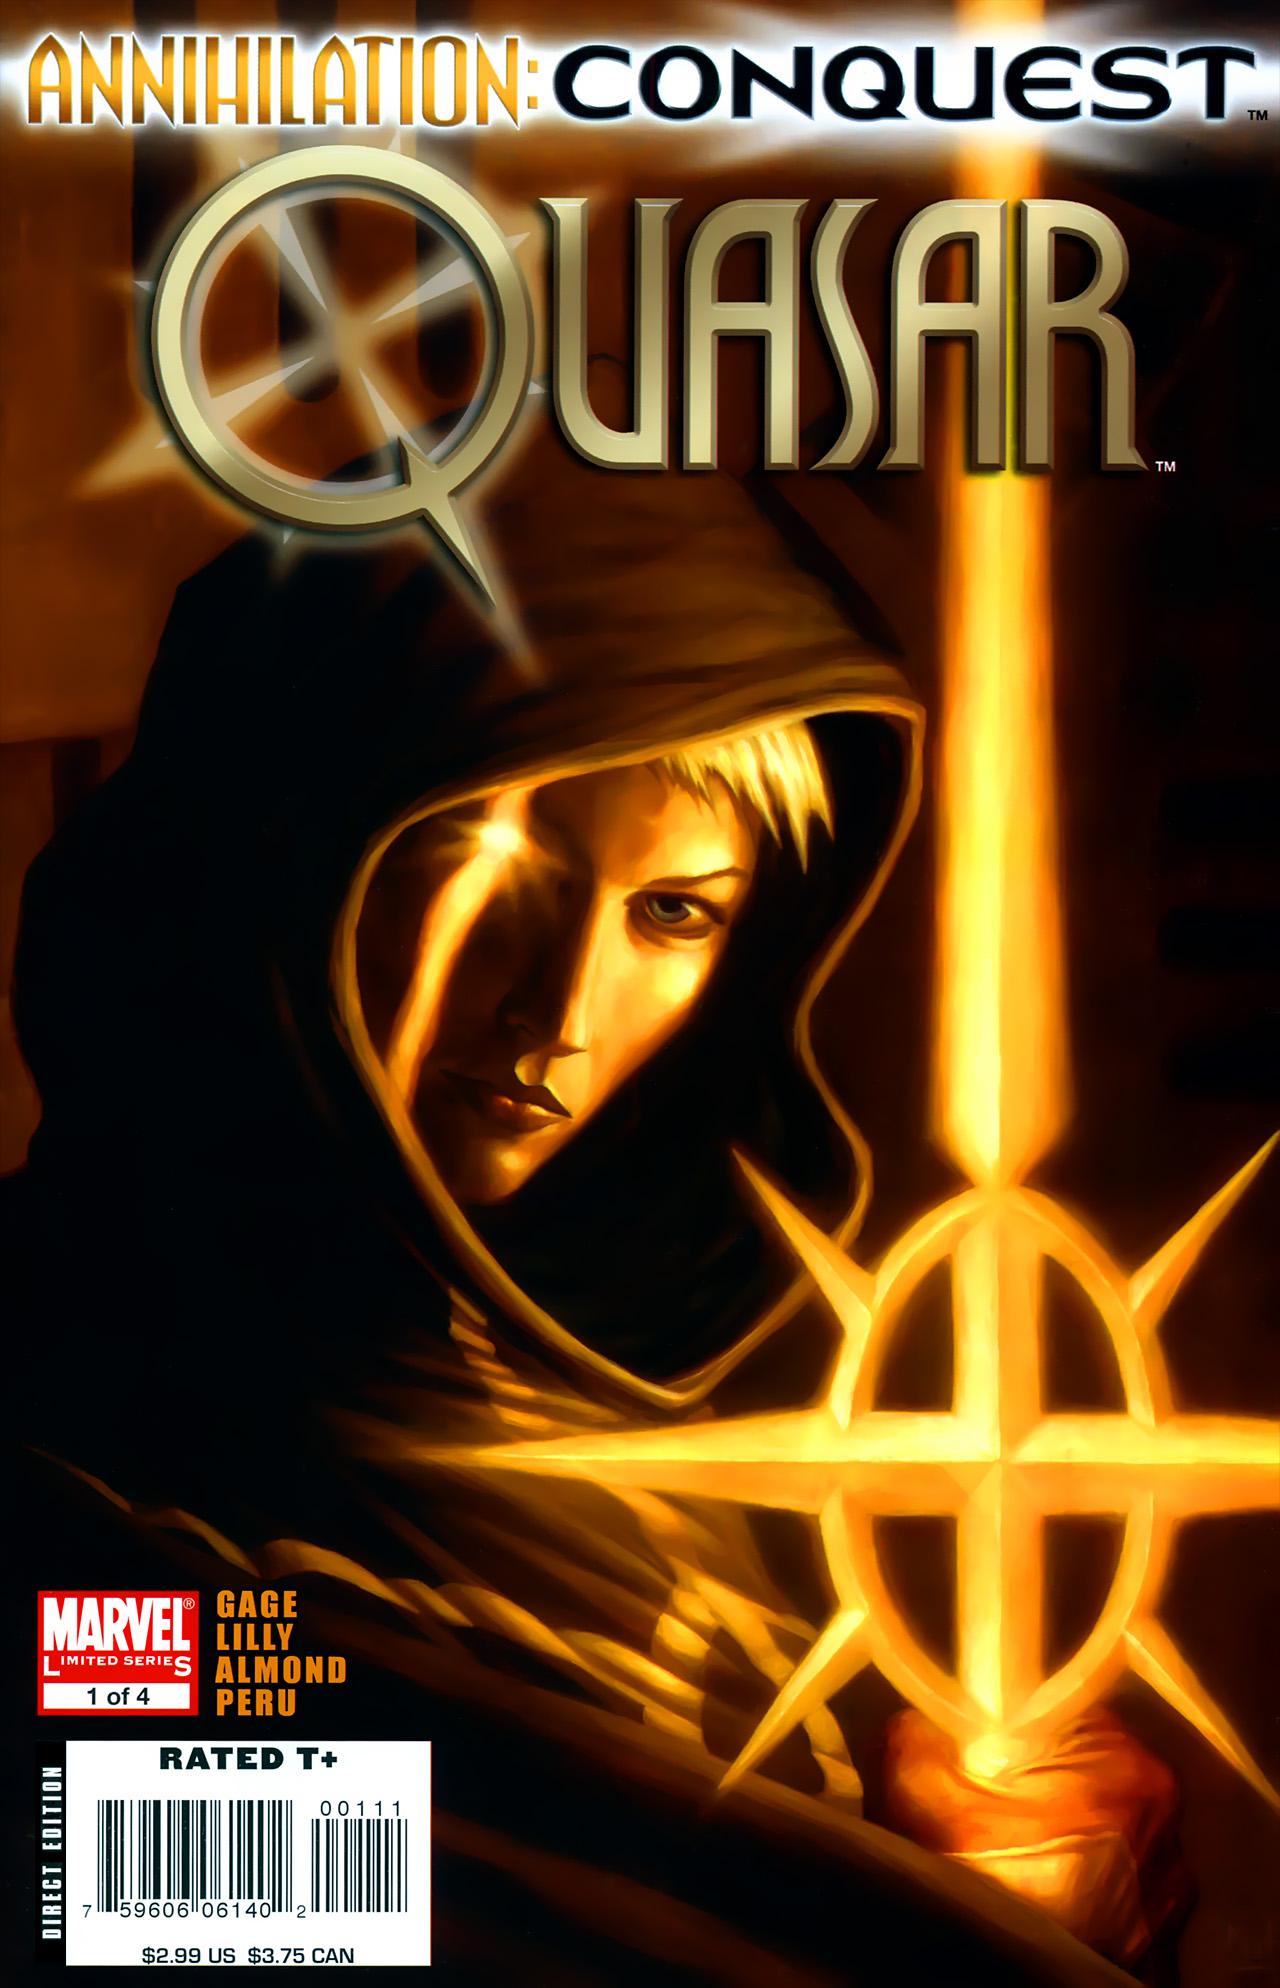 Annihilation: Conquest - Quasar Vol. 1 #1